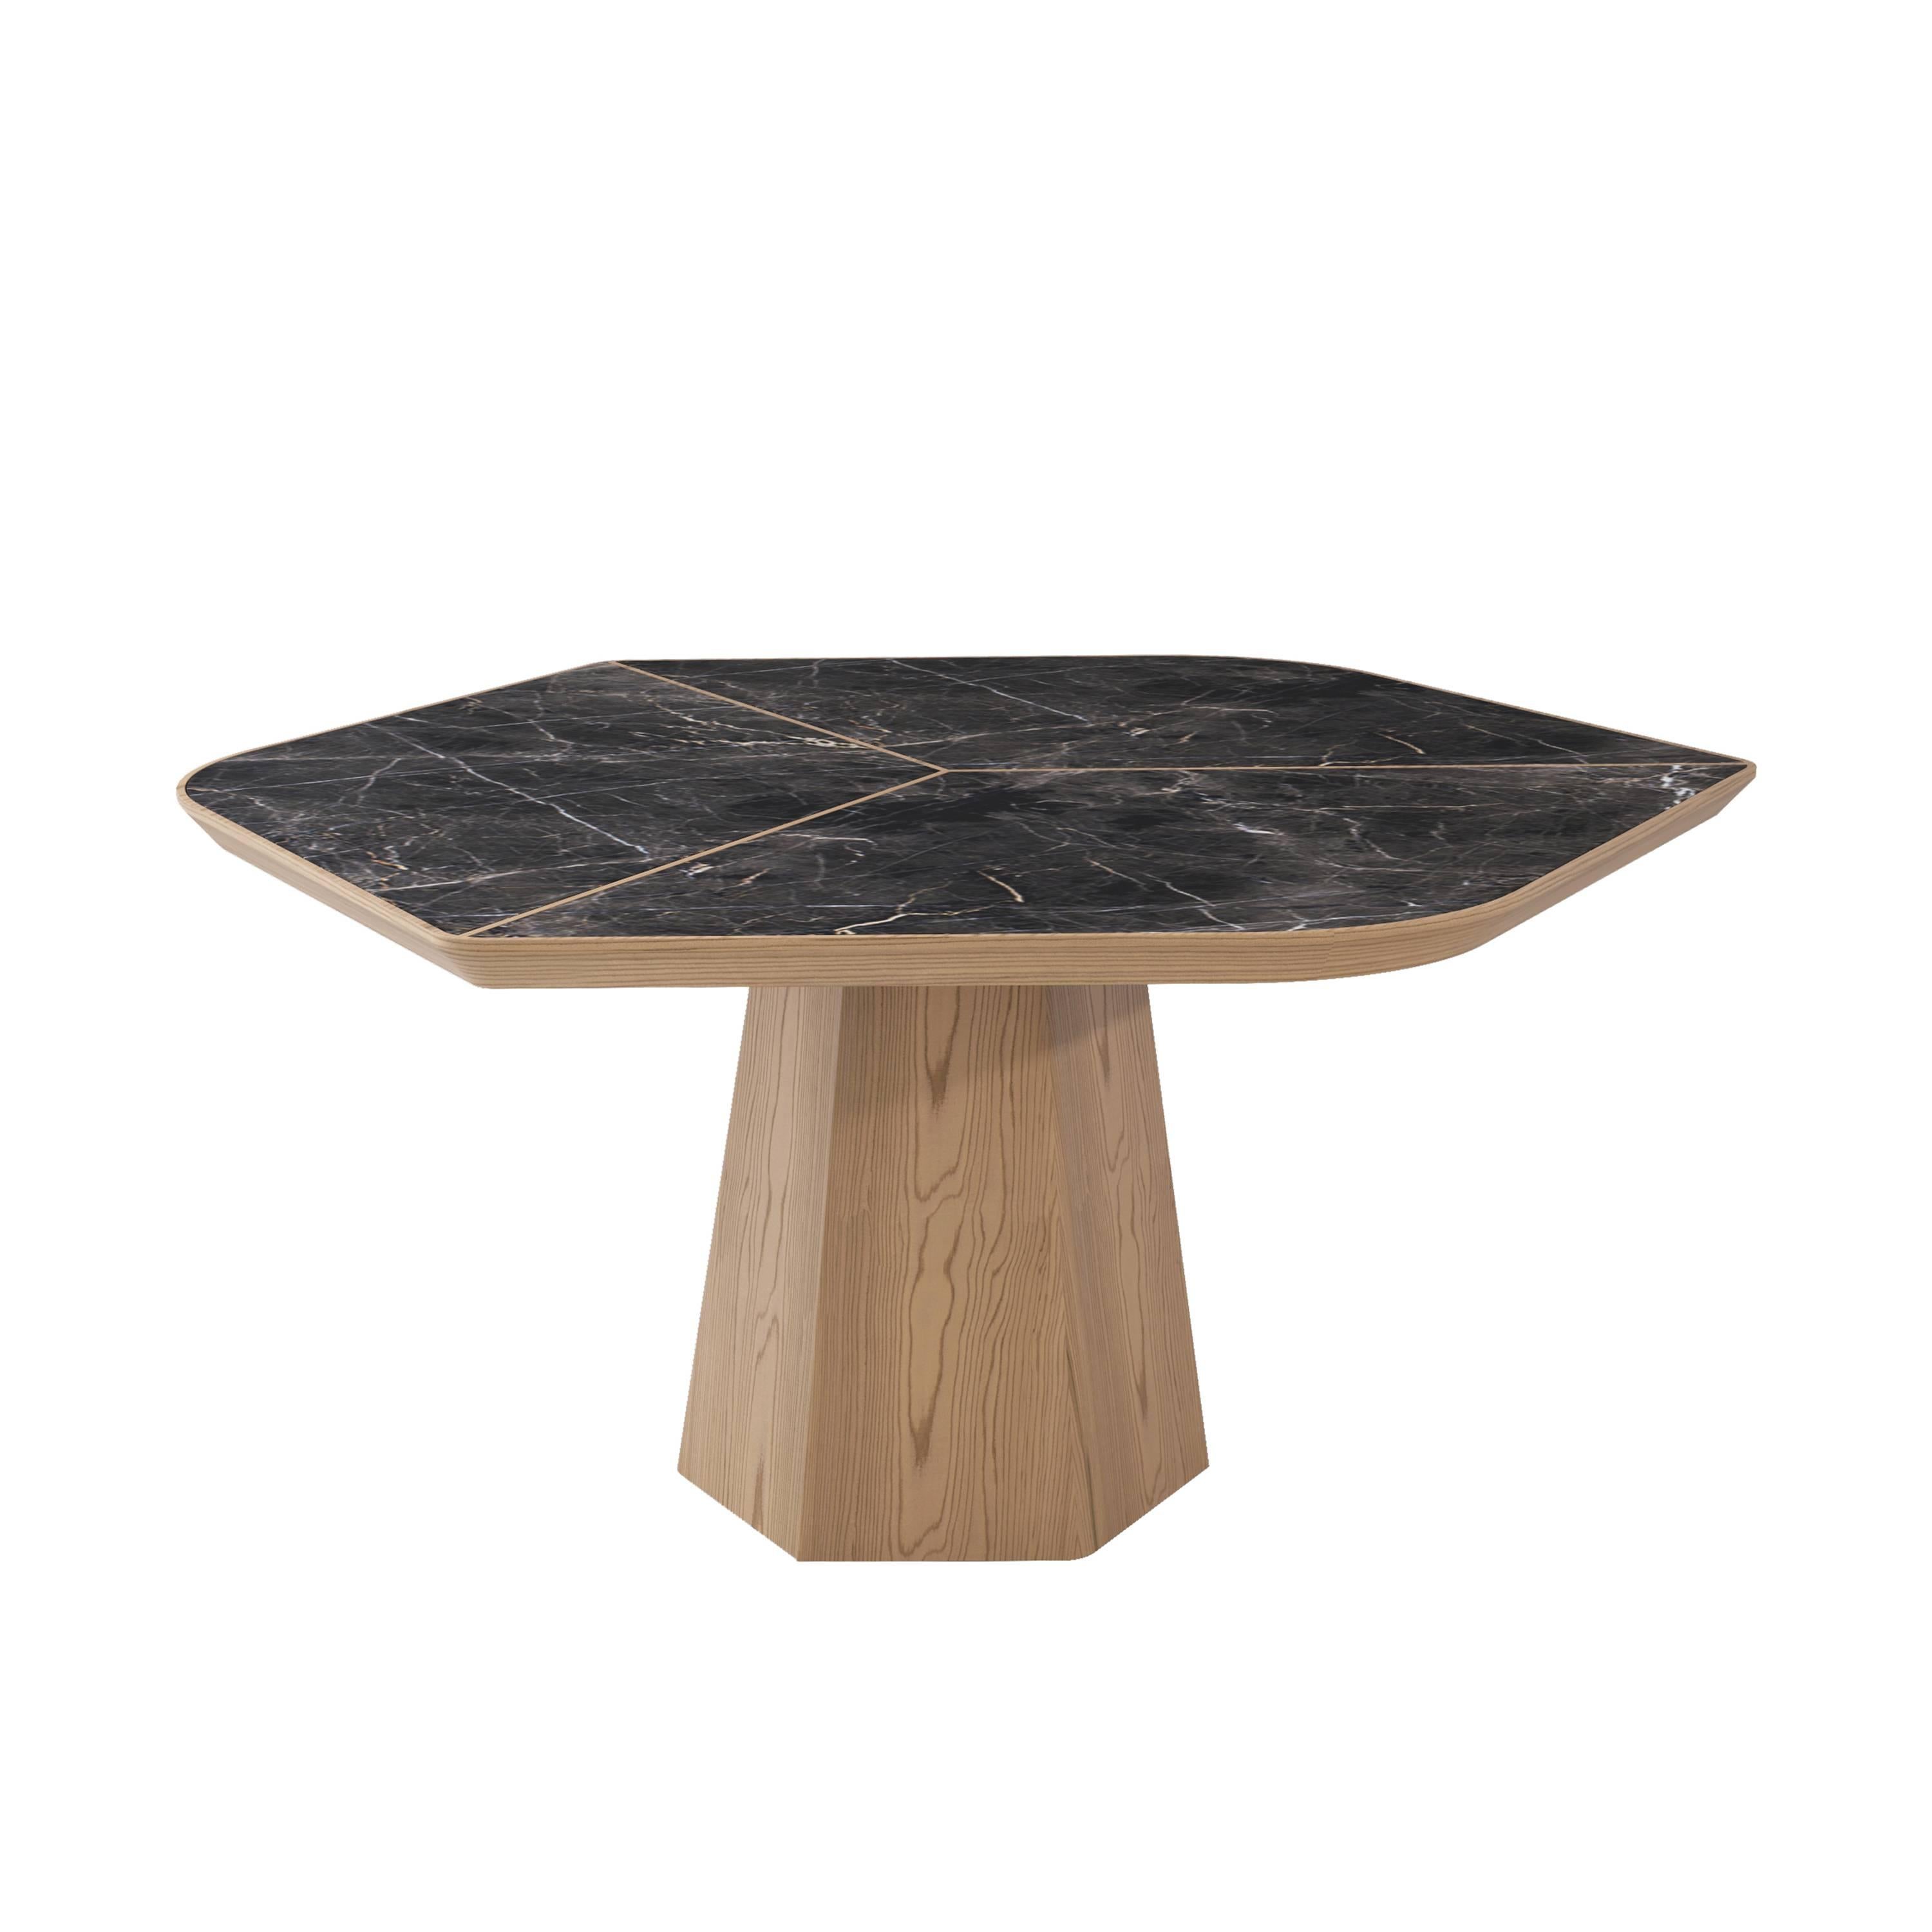 Die klassische Eleganz des Marmors in Verbindung mit raffinierten Details machen den Evolve-Tisch zu einer echten Skulptur.
 
Der Evolve-Esstisch wurde in der Türkei mit dem 